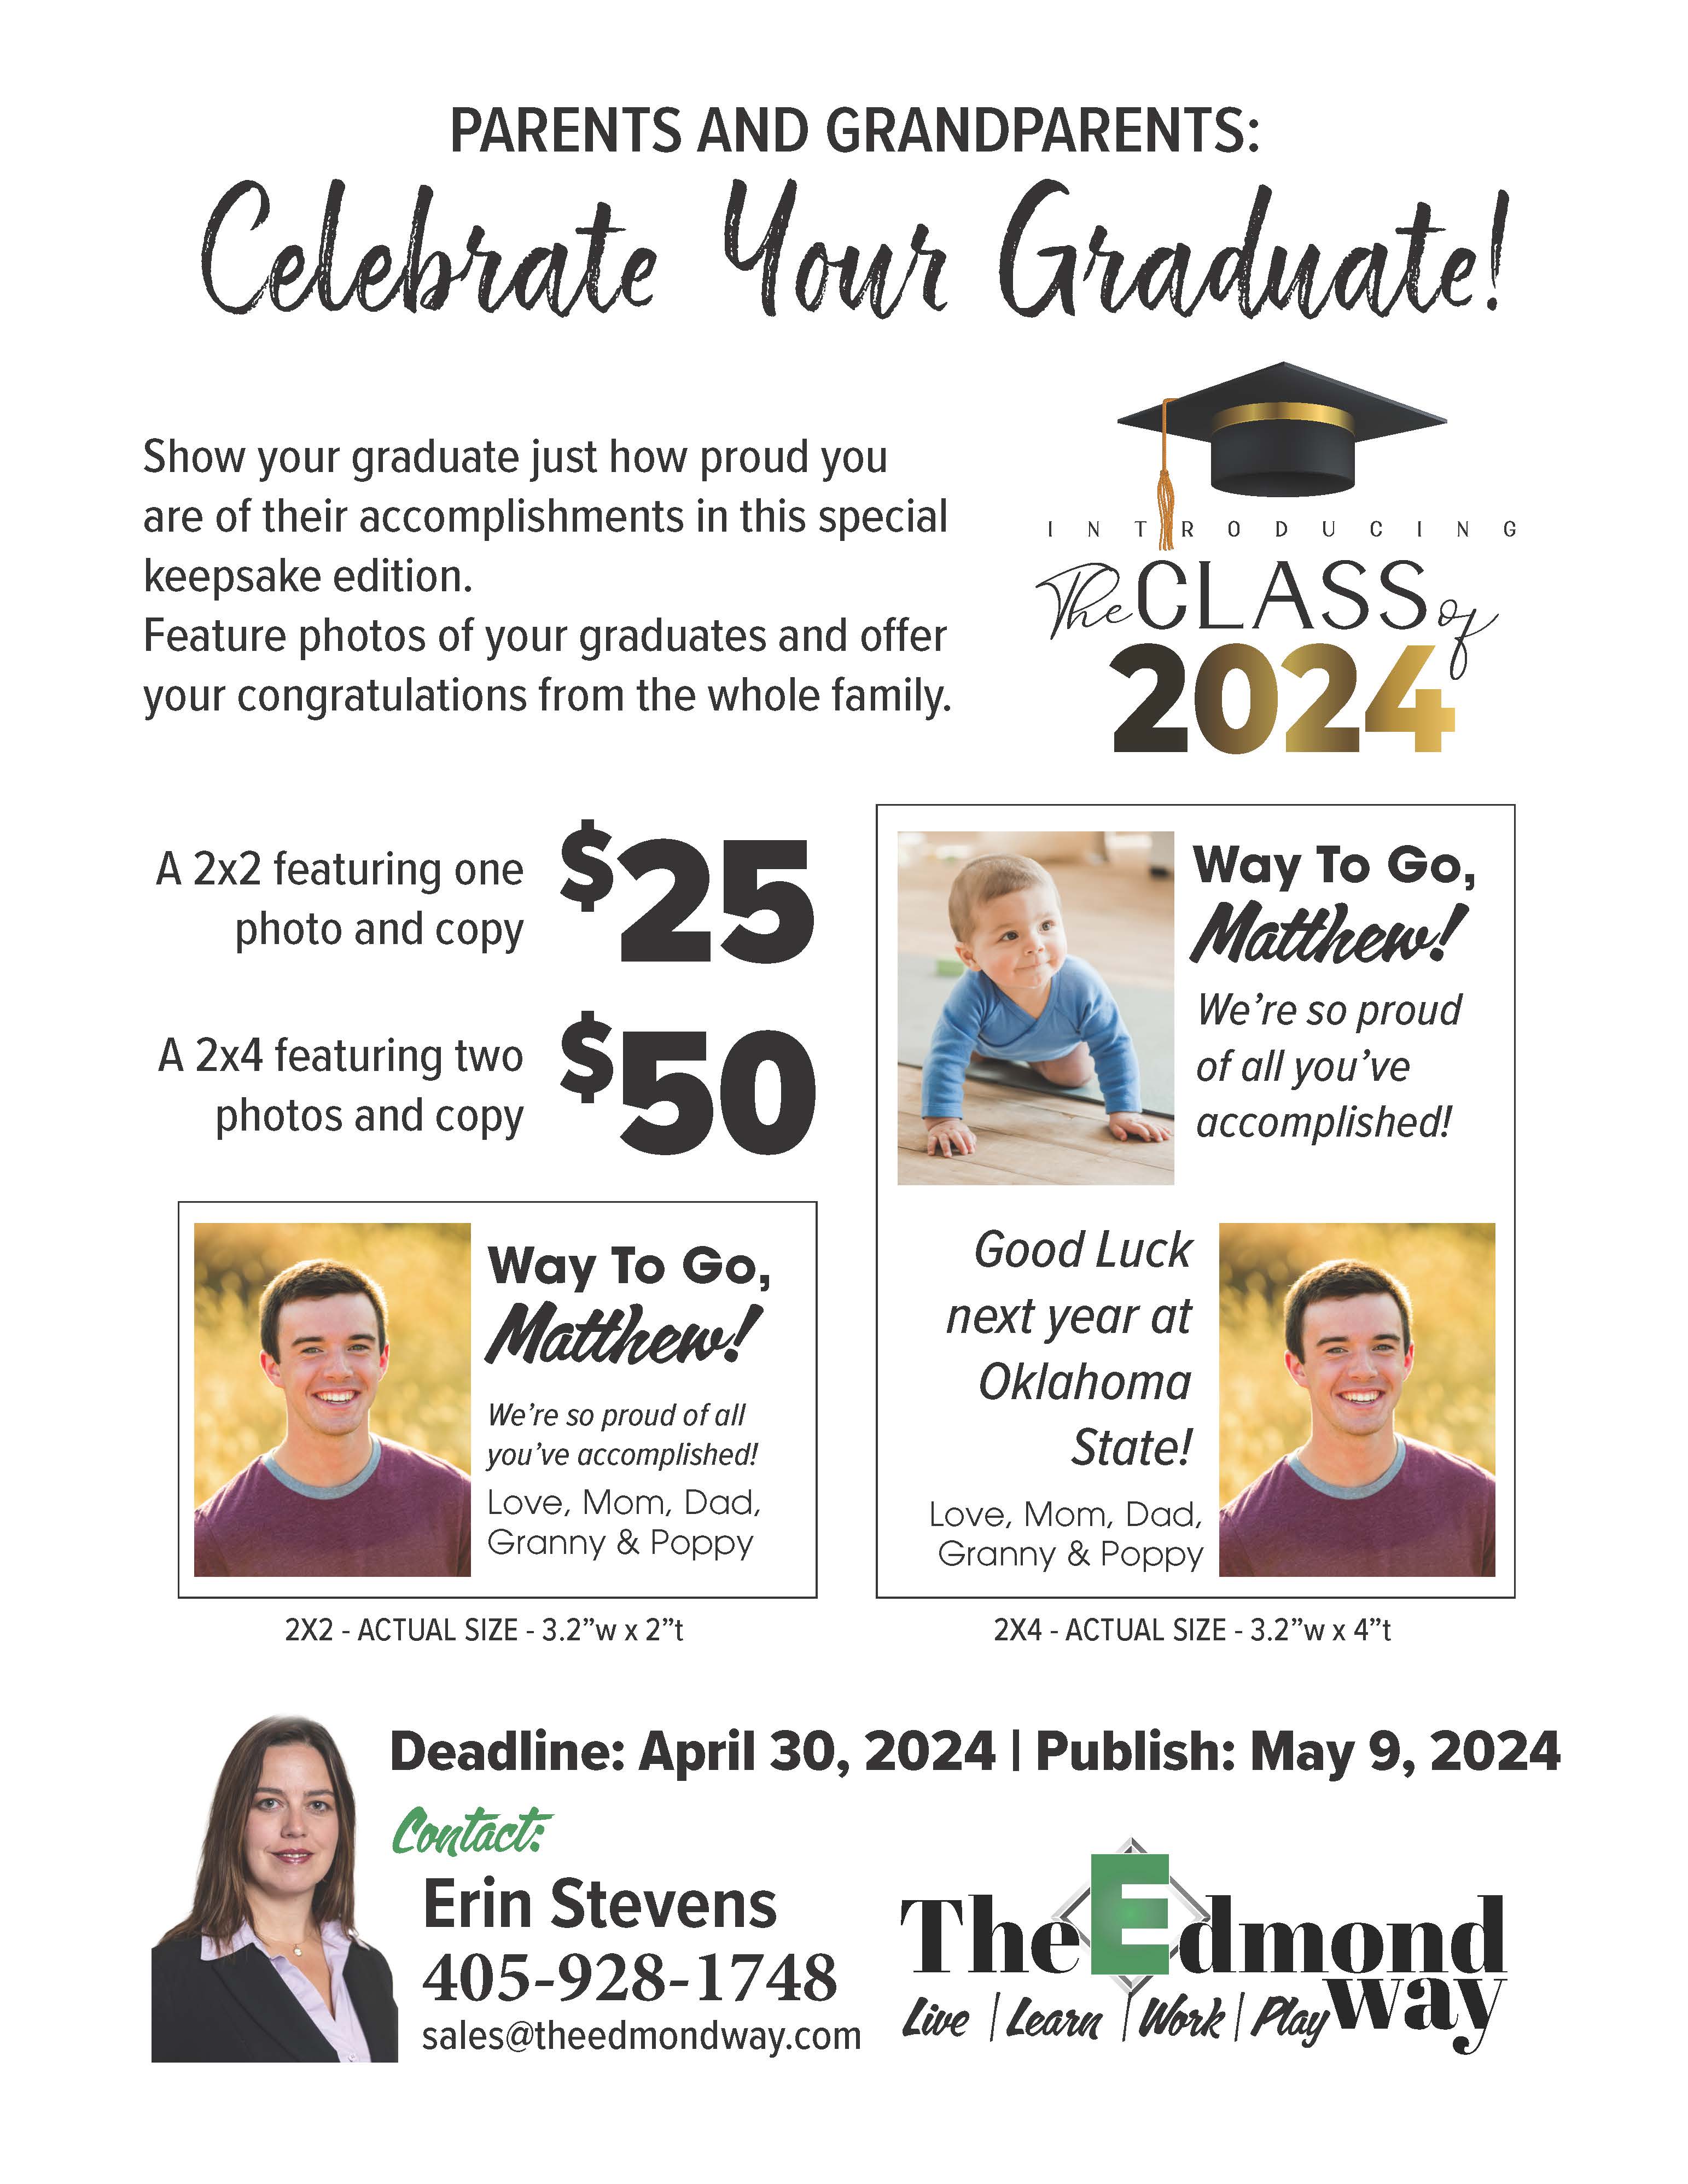 Celebrate your Graduate